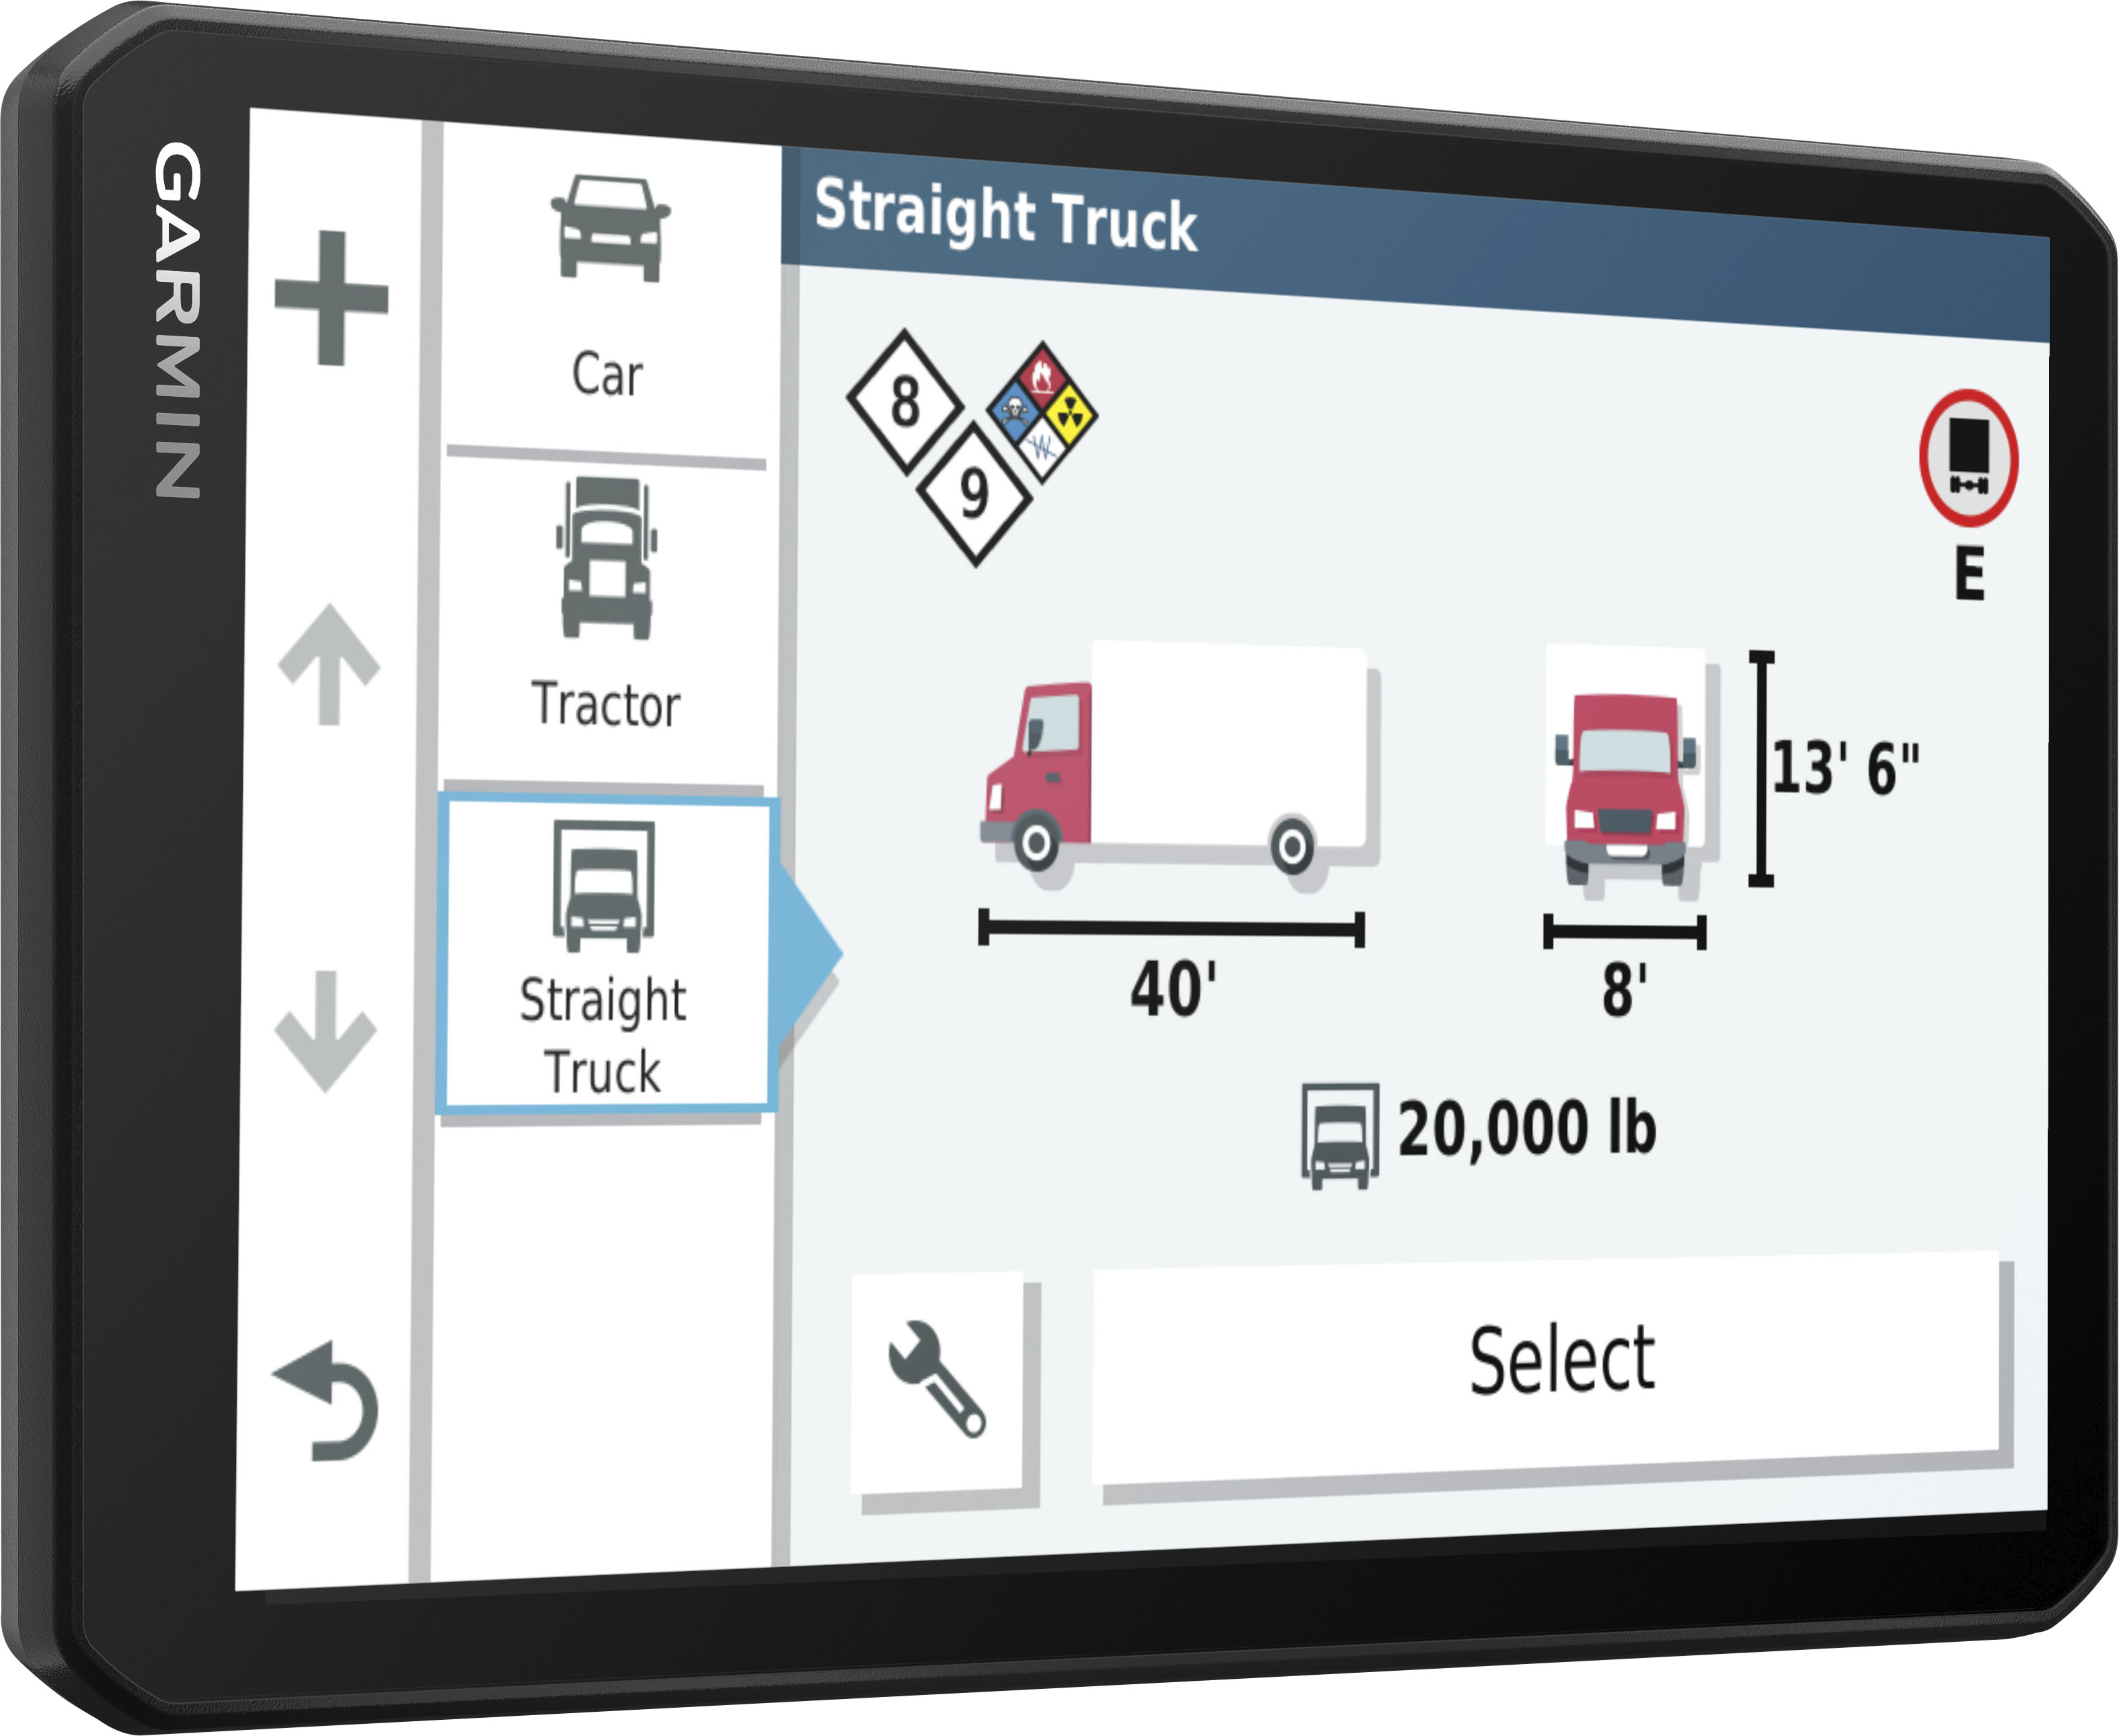  Garmin 010-02313-00 dezl OTR700, navegador GPS para camiones de  7 pulgadas, pantalla táctil fácil de leer, enrutamiento personalizado de  camiones y guía de carga a muelle : Electrónica